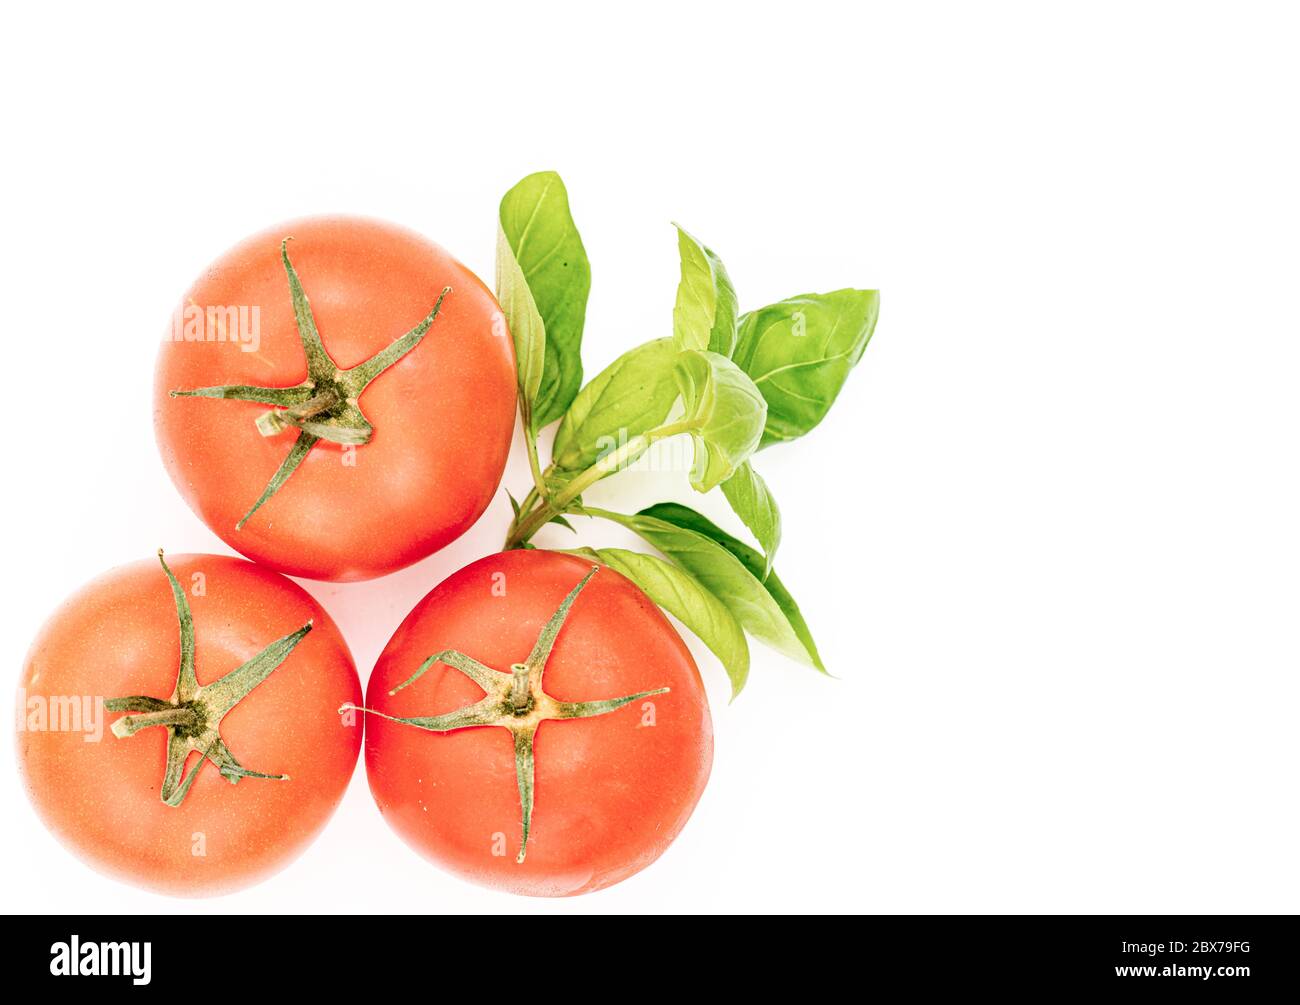 Fresh Tomatoes isolated on white background Stock Photo